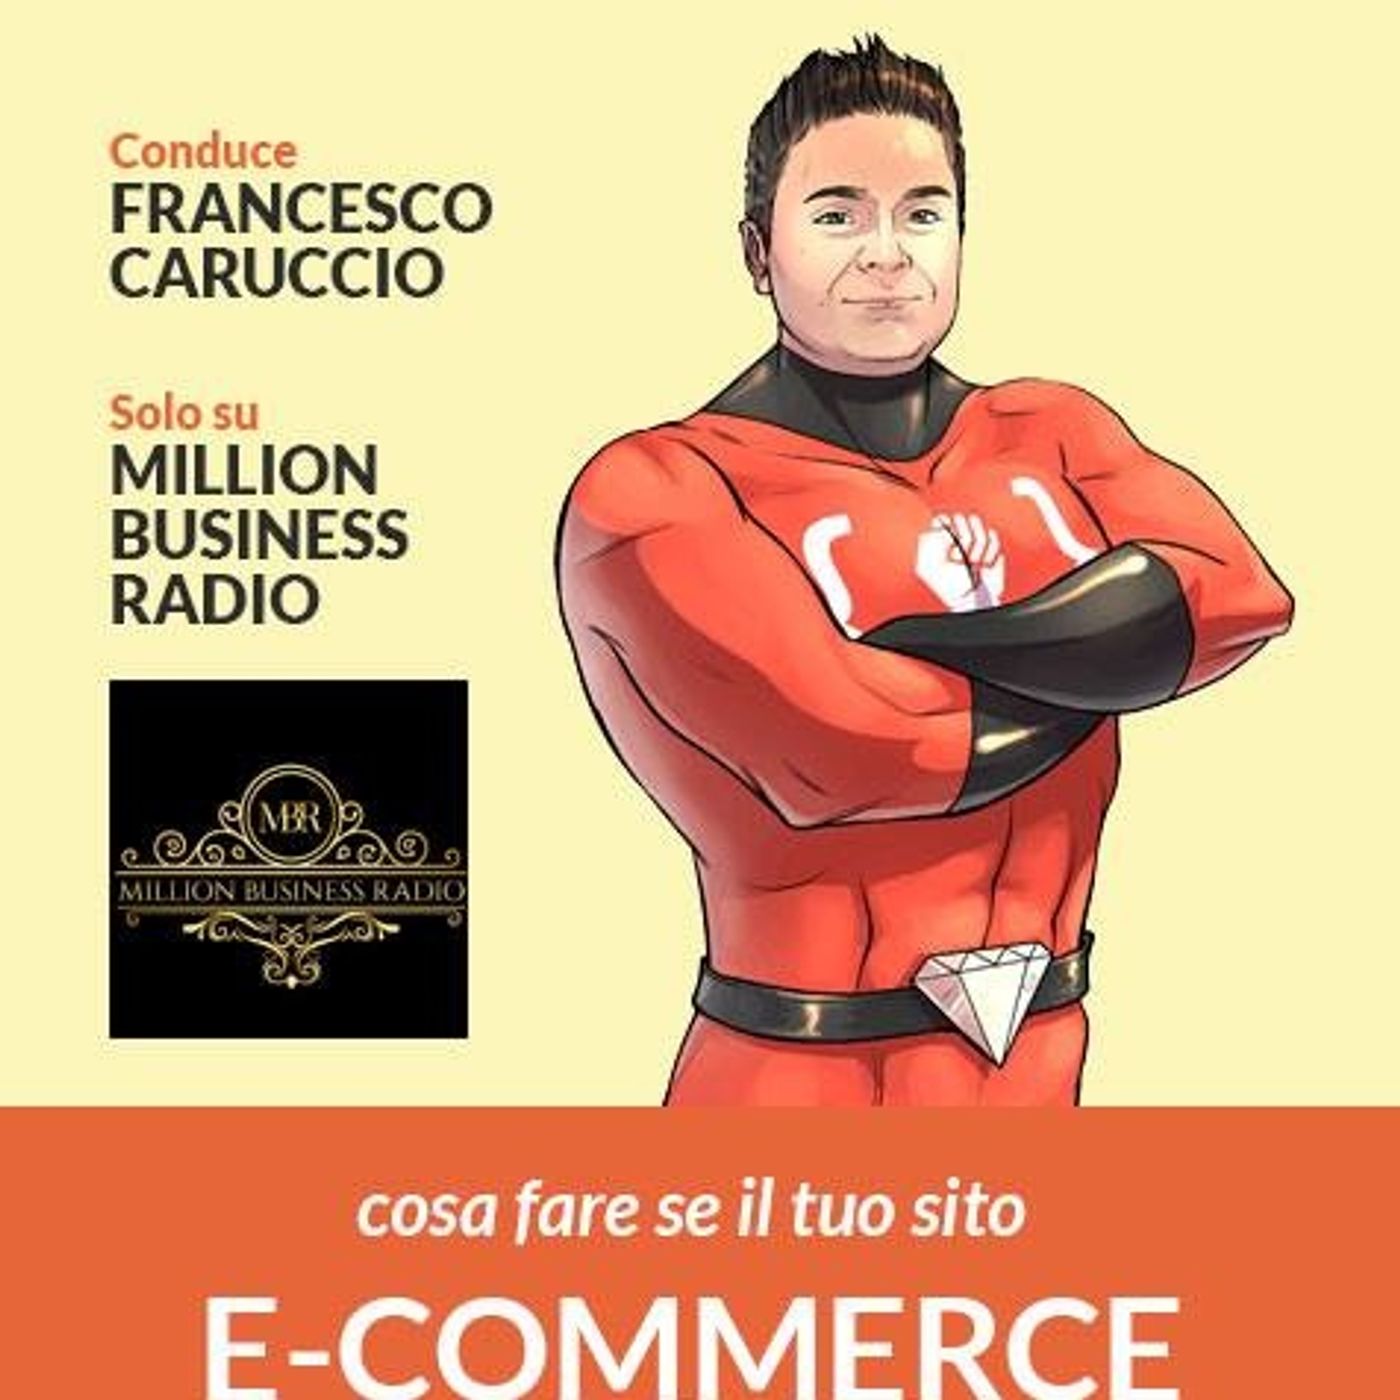 [S.O.S. E-commerce] - Come creare il Prodotto di front end nel sito e-commerce